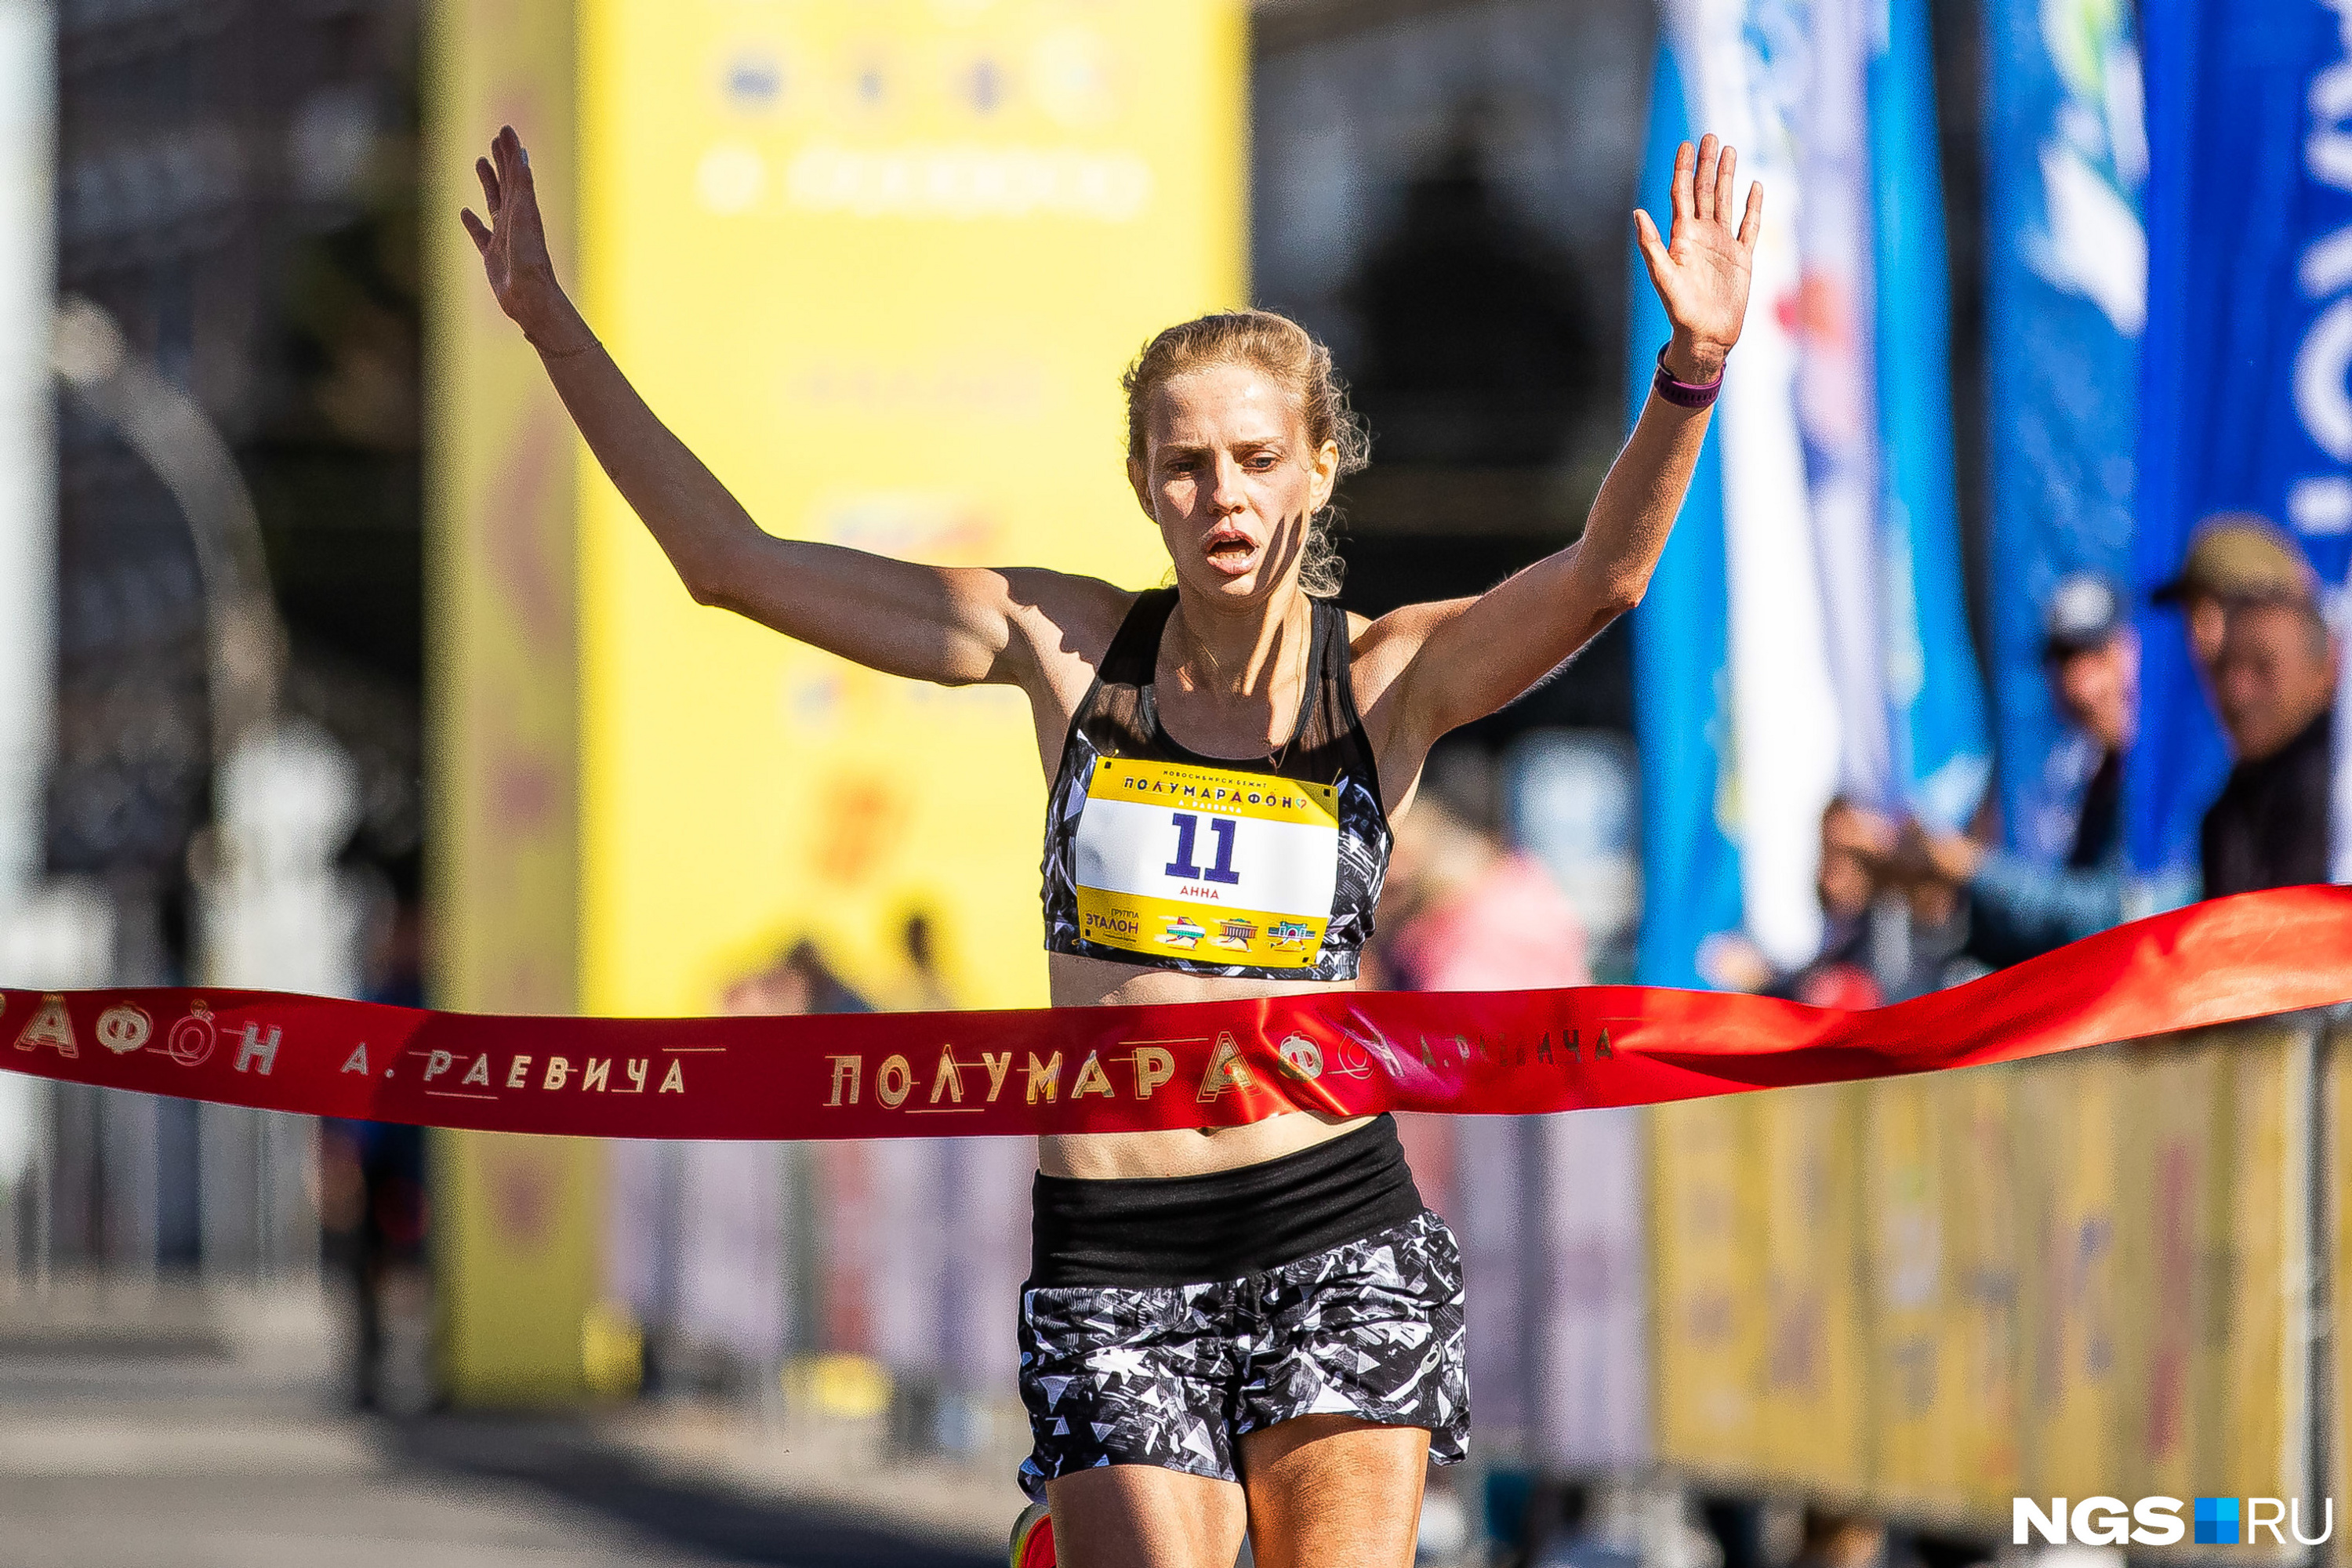 Победительницей среди женщин, <a href="https://ngs.ru/text/sport/2021/09/11/70130045/" class="_" target="_blank">как и в прошлом году</a>, стала Анна Викулова. Она пробежала 21 км за 1 час 12 минут и 44 секунды — на 1 минуту и 20 секунд медленнее, чем год назад